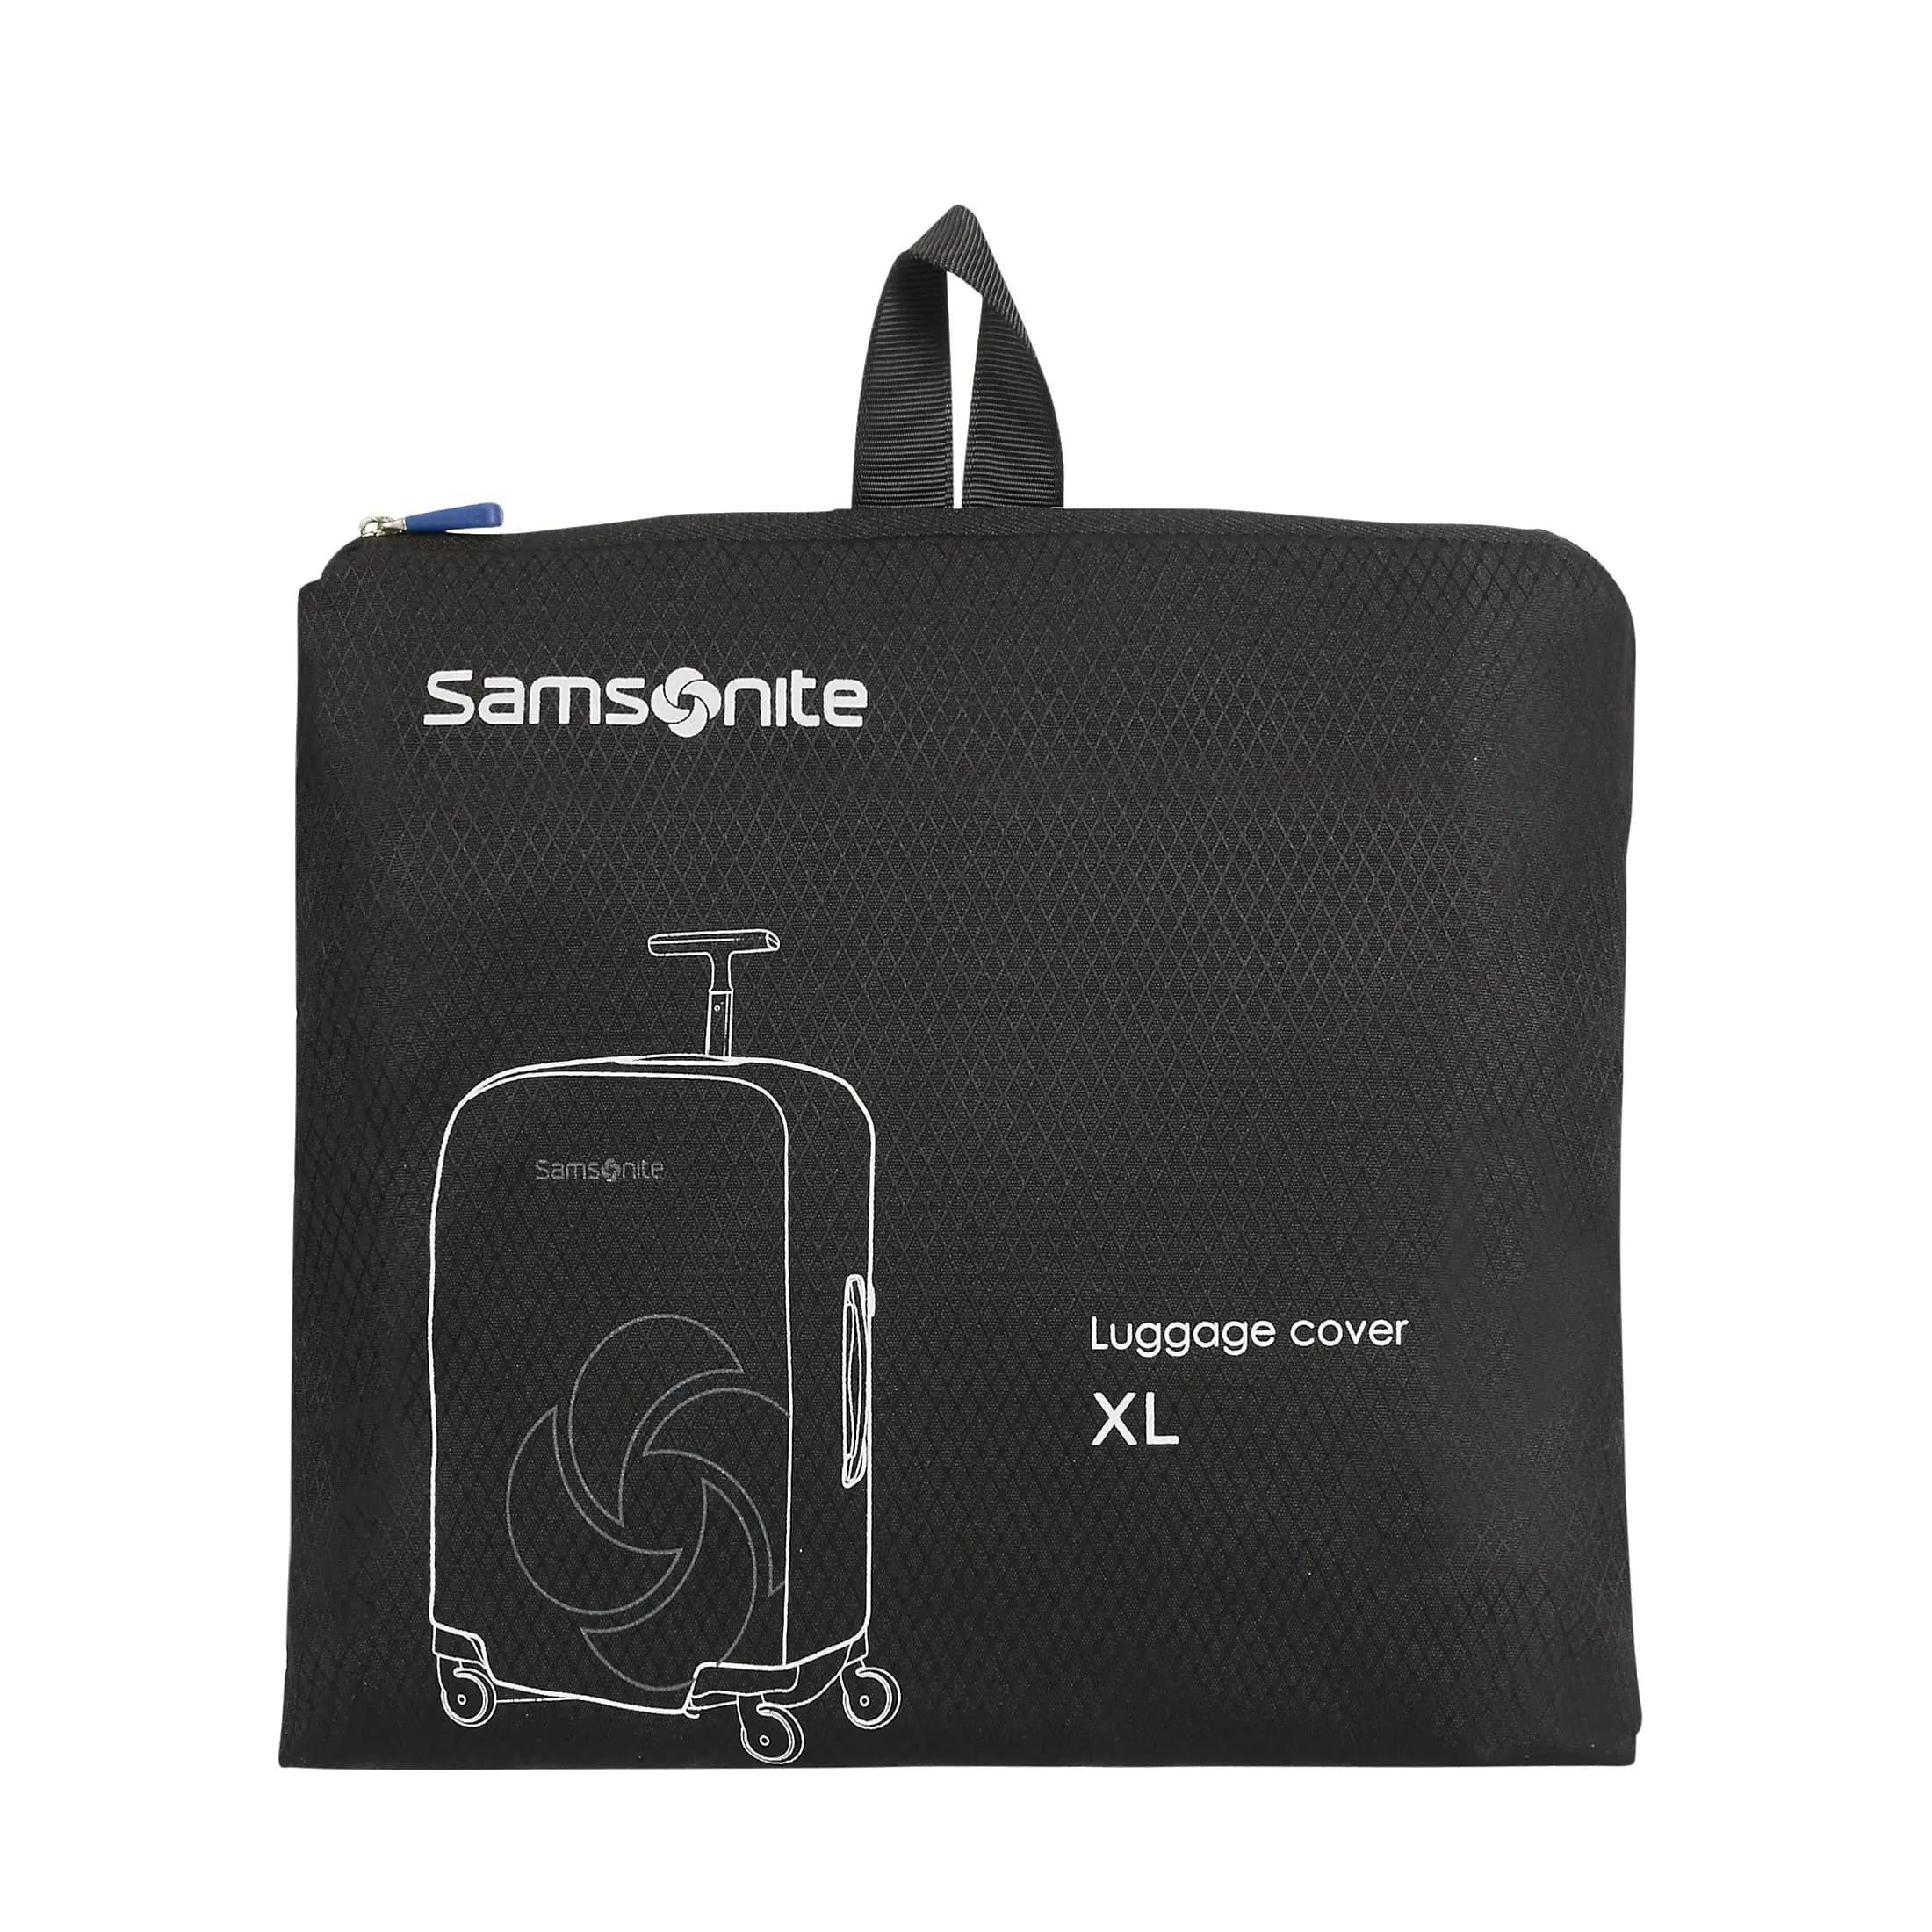 Samsonite Travel Accessories Kofferhülle XL 86 cm - black